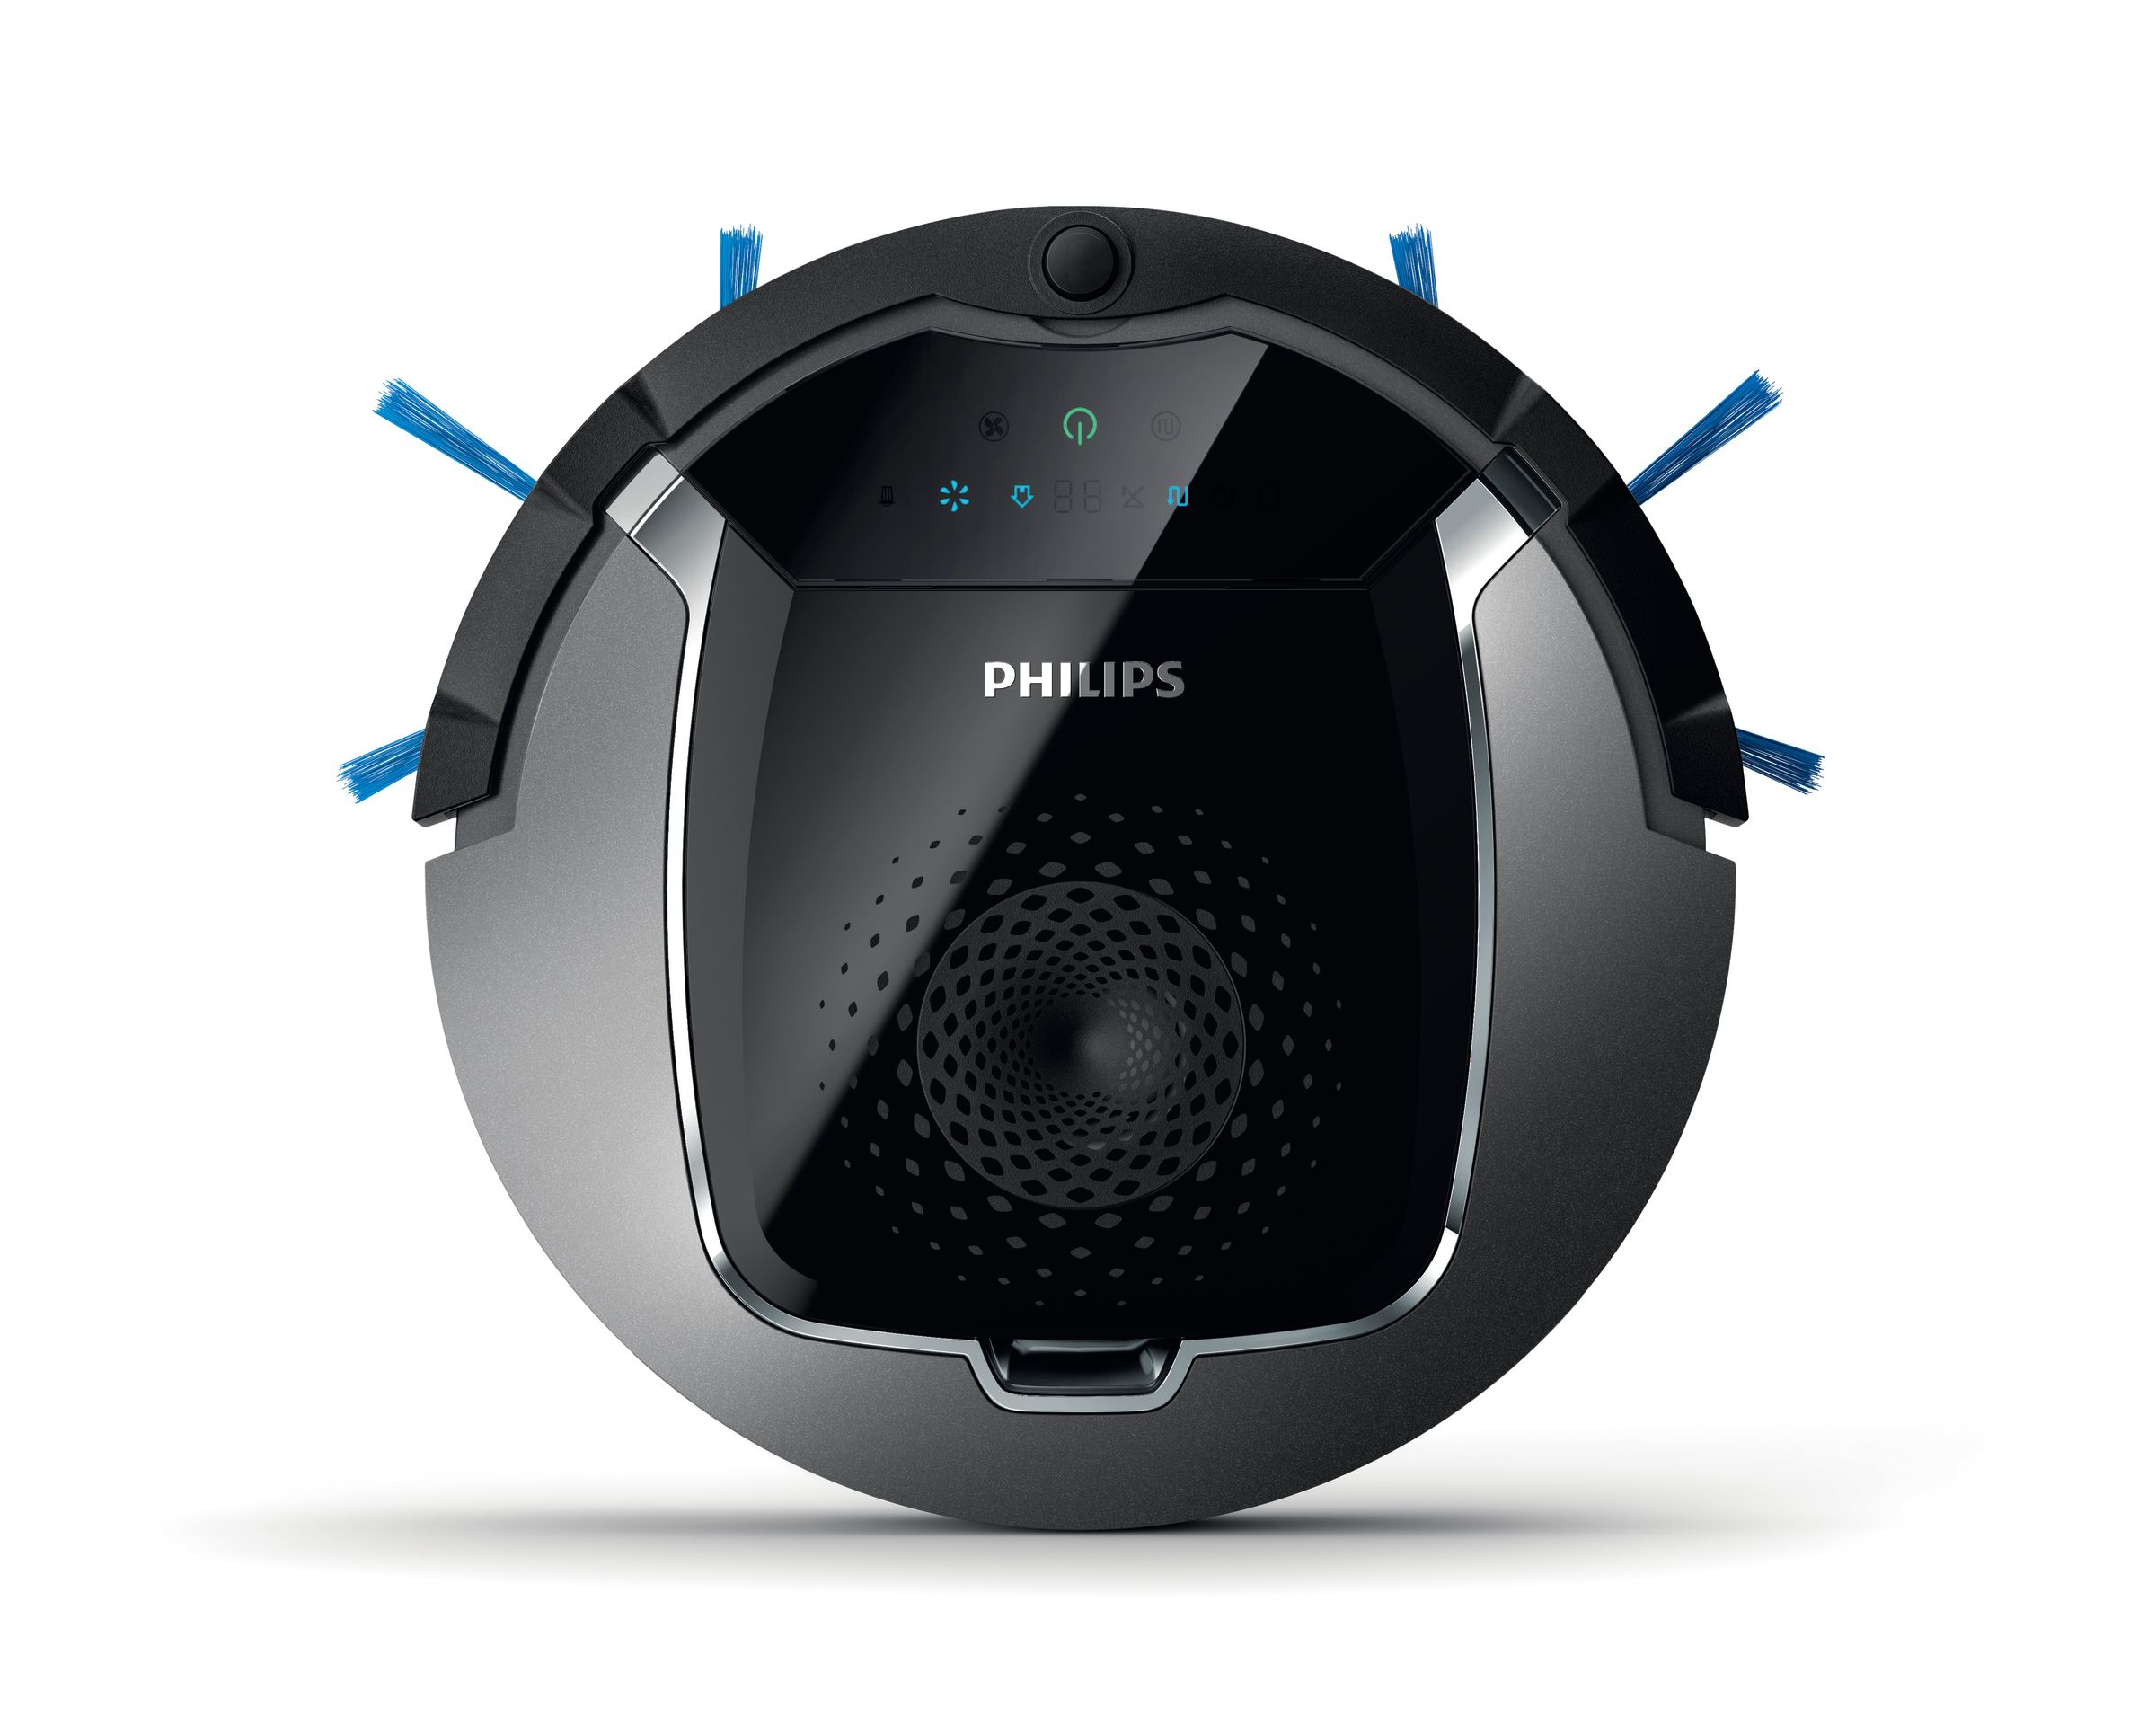 Philips SmartPro Active FC8822/01R1 robot vacuum